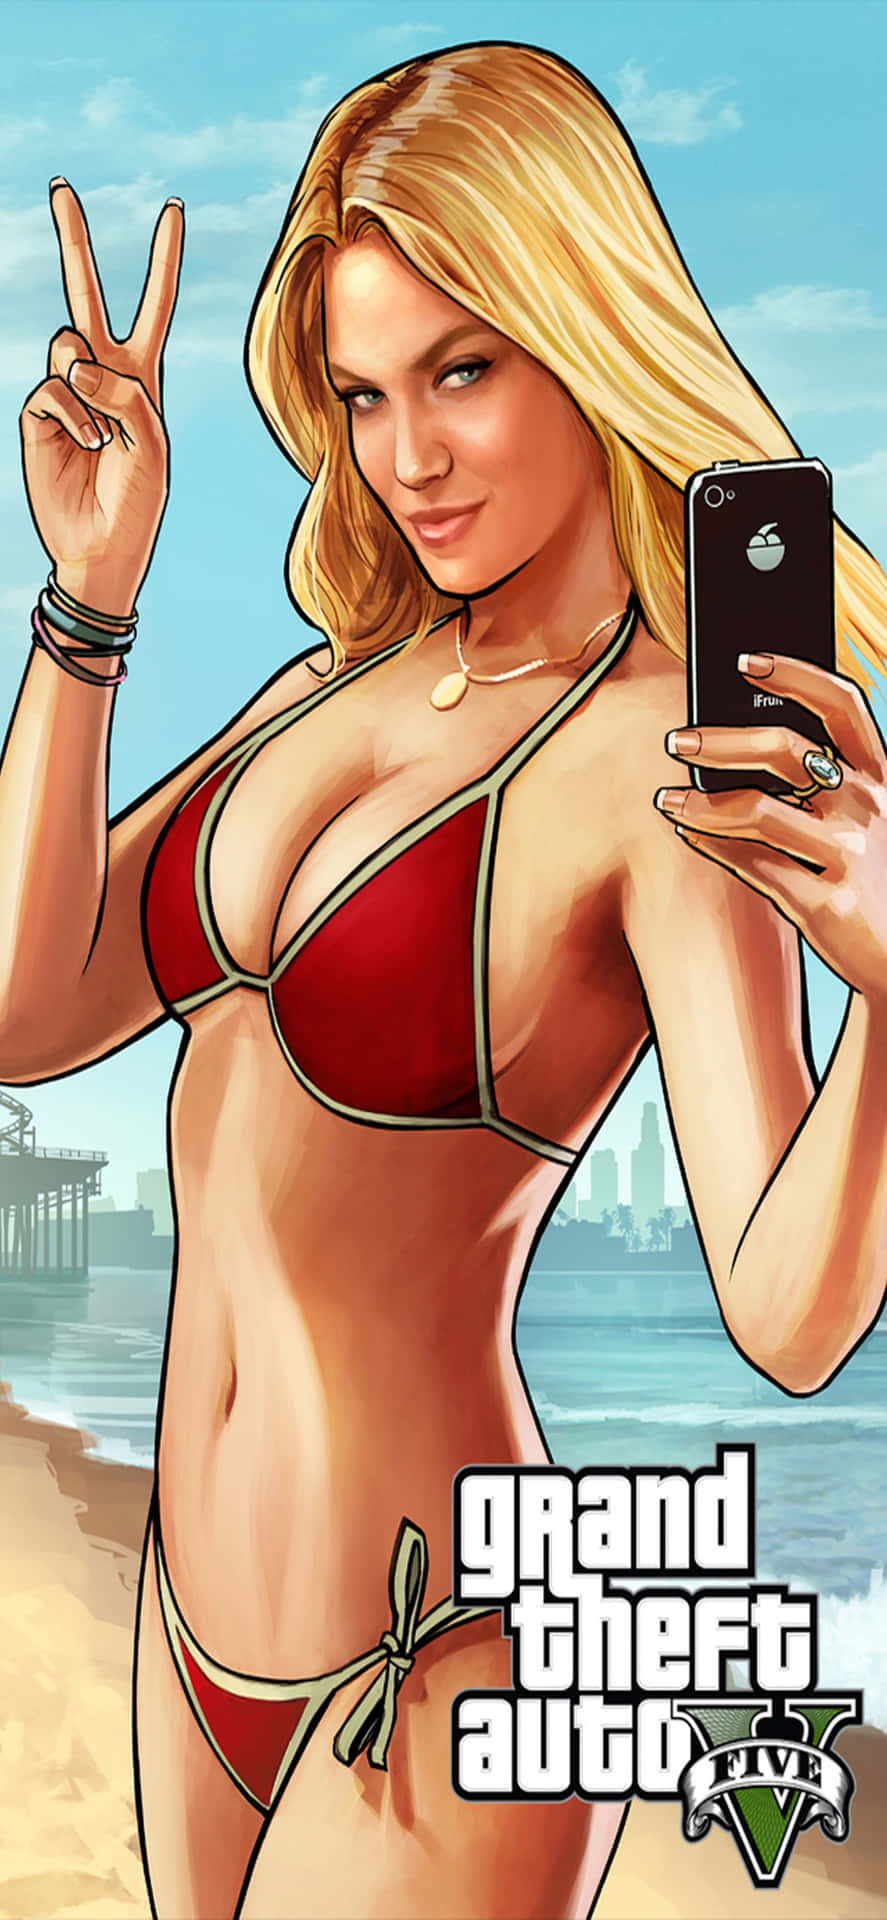 Iphonexs Max Grand Theft Auto V Bakgrund Blond Tjej I Röd Bikini.